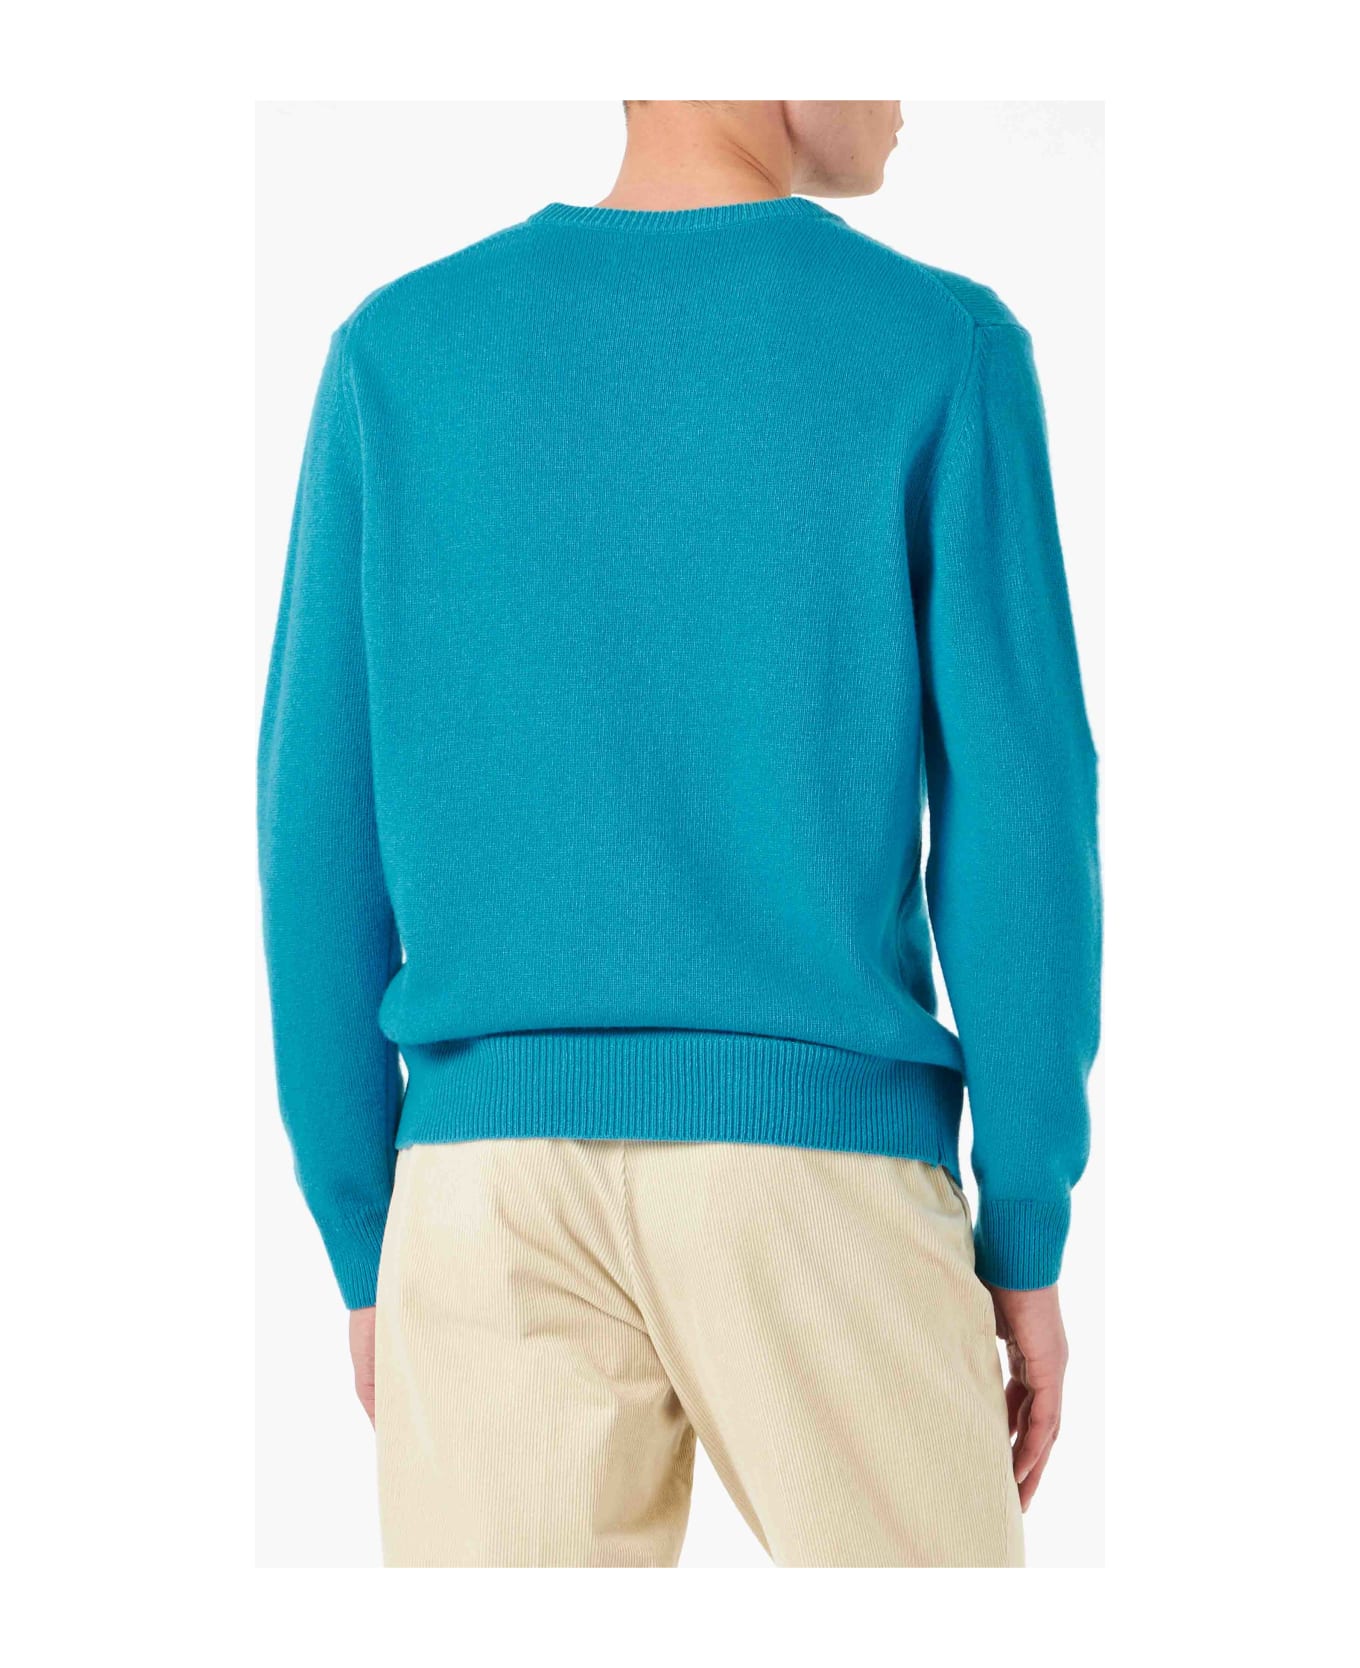 MC2 Saint Barth Man Sweater With Bello E Possibile Print - BLUE